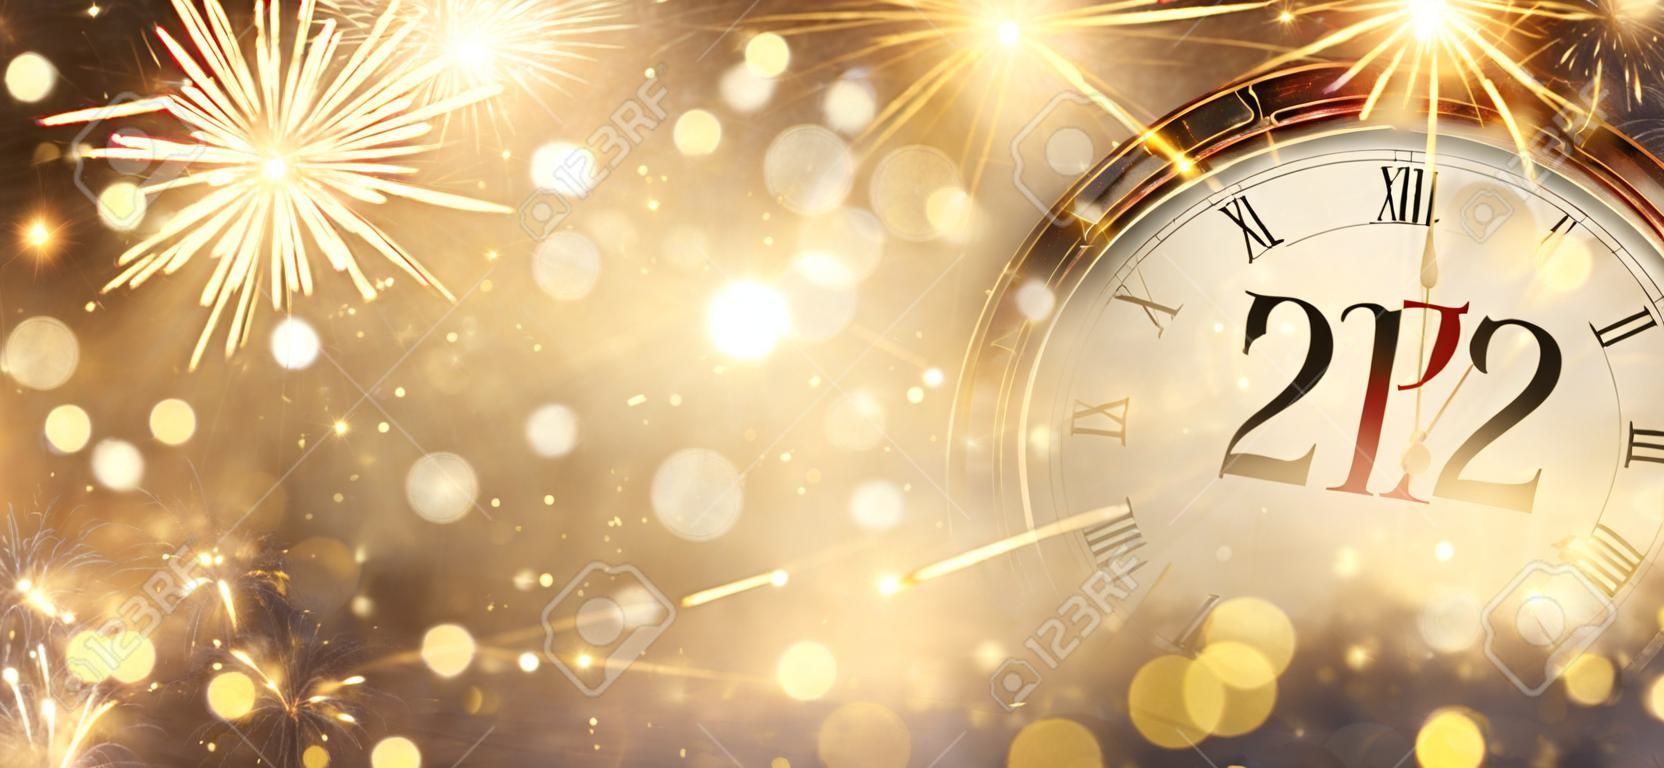 2022 Ano Novo - Relógio e Fogos de Artifício - Contagem regressiva para a meia-noite - Fundo desfocado abstrato dourado